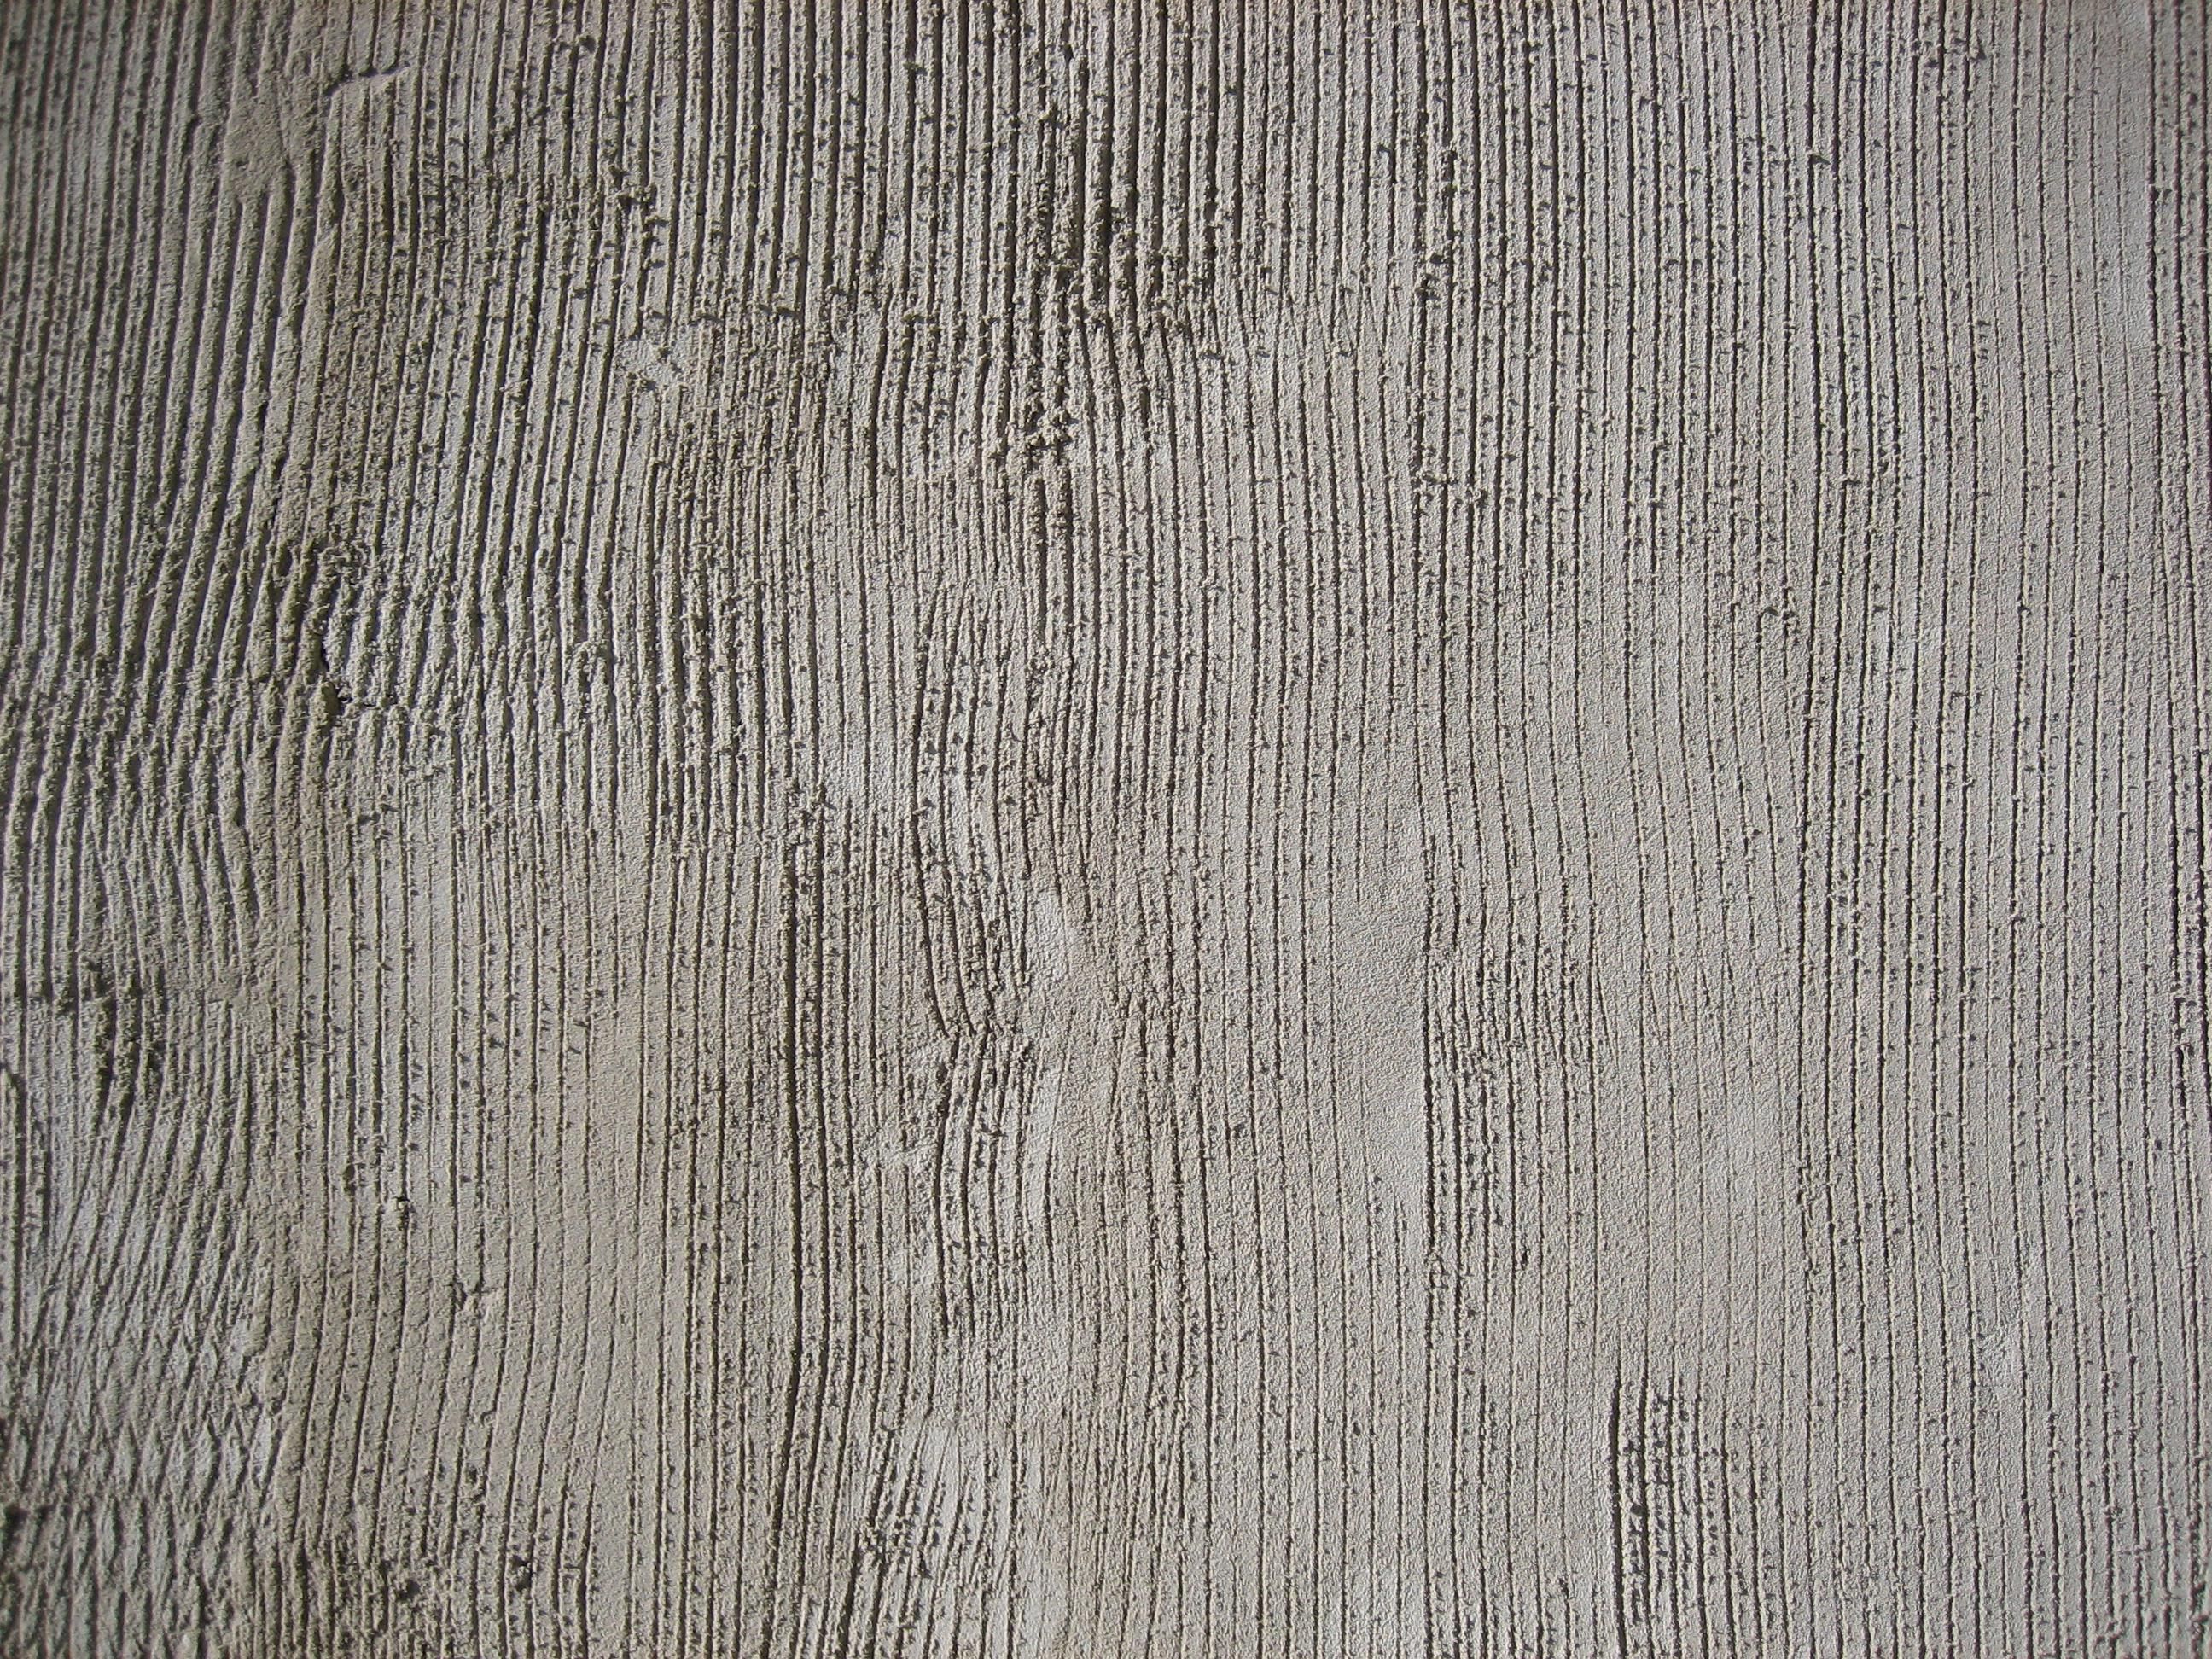 Concrete surface photo